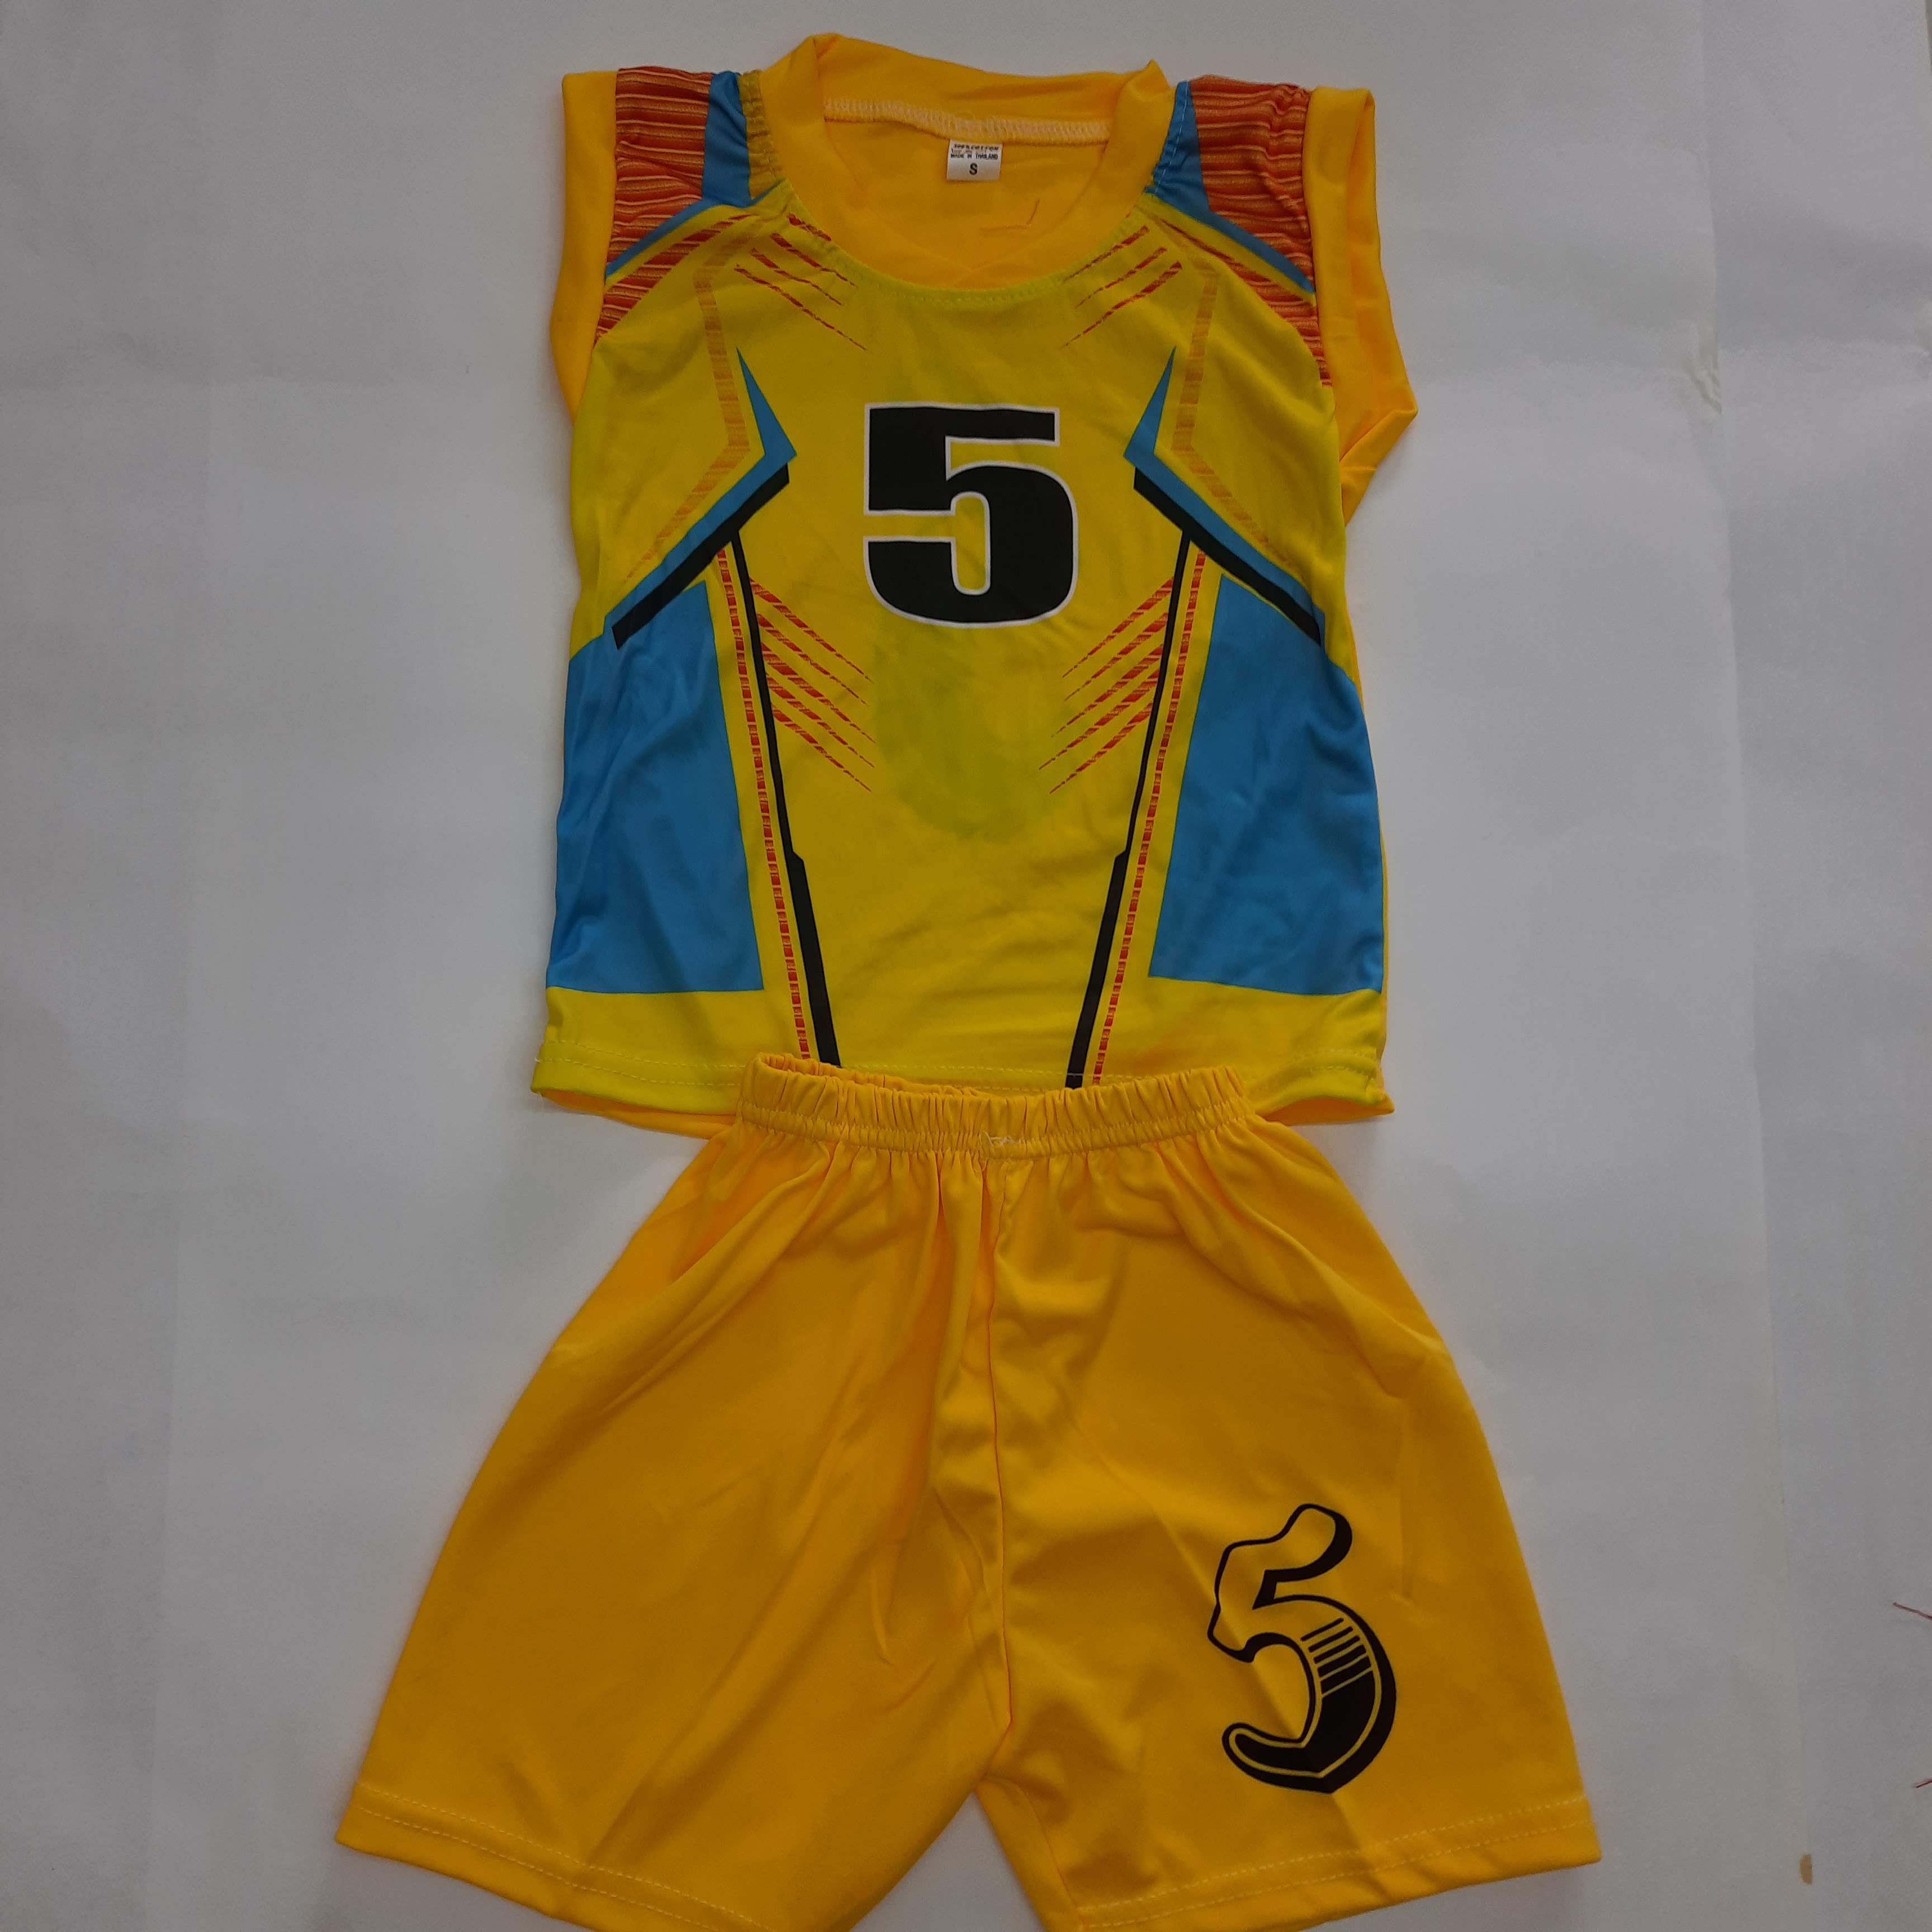 ชุดกีฬาเด็ก ไซส์ S อก22นิ้ว (รบกวนเลือกแค่สีไม่เลือกลายนะจ๊ะ) สีสันสดใส 6-12เดือน